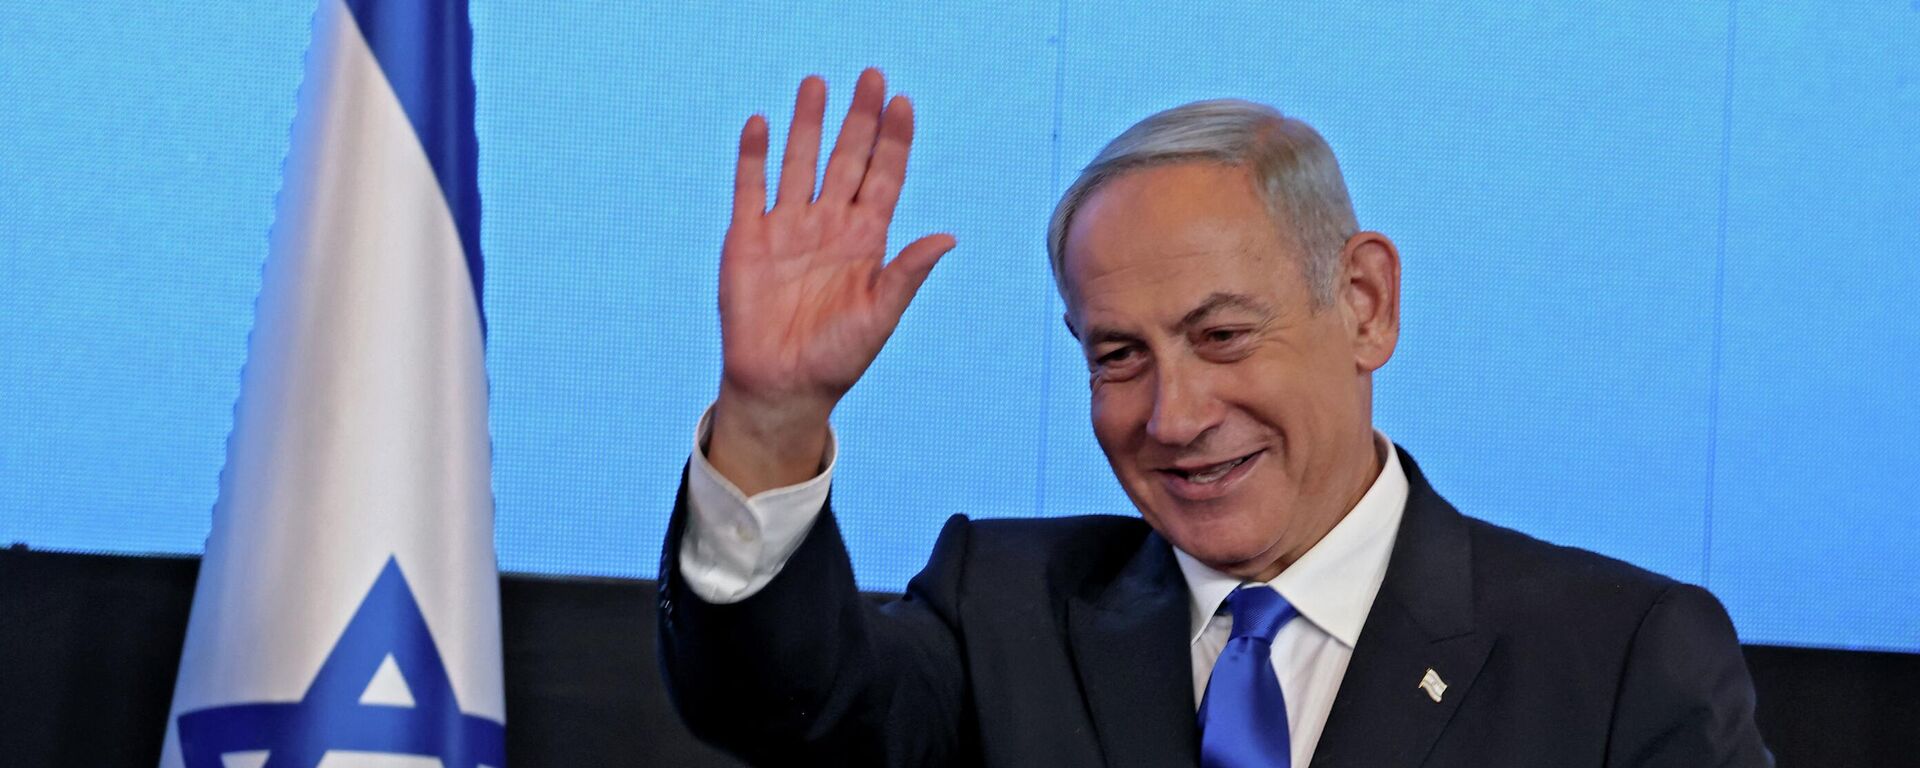 زعيم المعارضة الإسرائيلية بنيامين نتنياهو بعد فوزه في الانتخابات العامة في إسرائيل، نوفمبر/ تشرين الثاني 2022. - سبوتنيك عربي, 1920, 05.02.2023